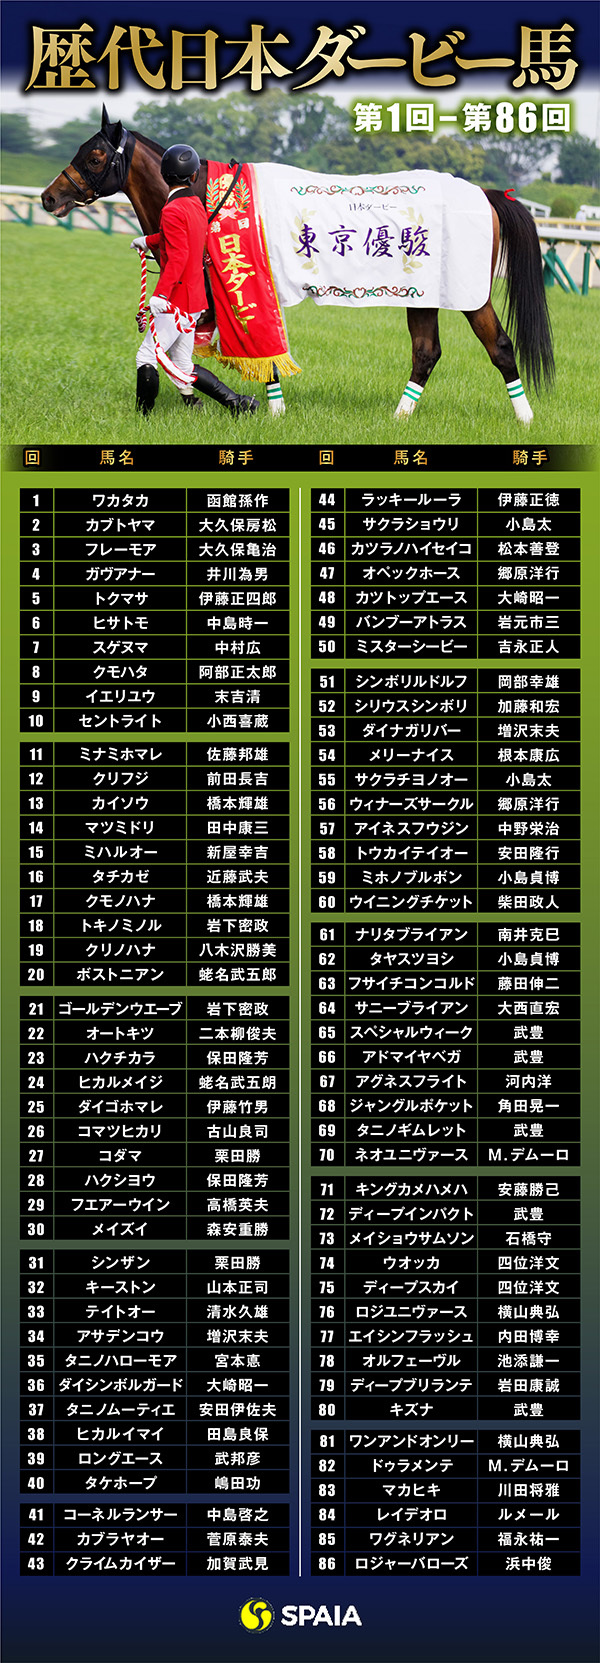 日本ダービー 1番人気16勝 キャリア5戦が10勝 5月前半生まれが6勝 など歴代ダービー馬の特徴とは 競馬 Ai データ分析 Spaia Ai競馬